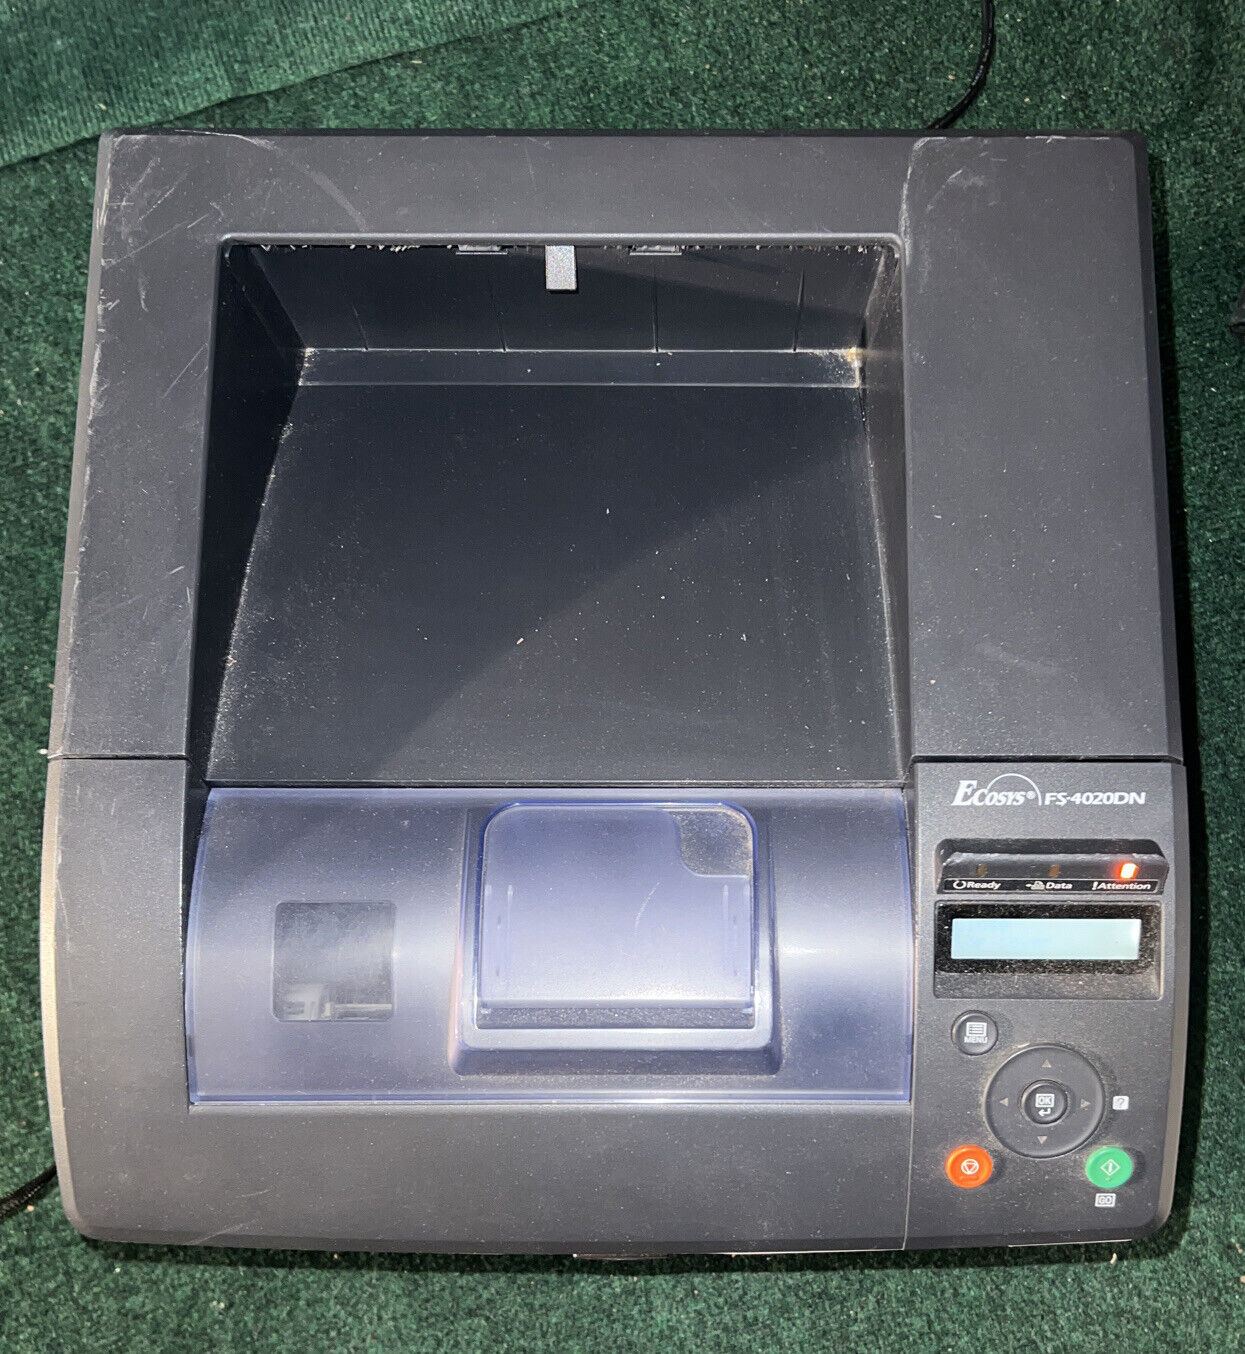 Kyocera Ecosys FS-4020DN Laser Printer